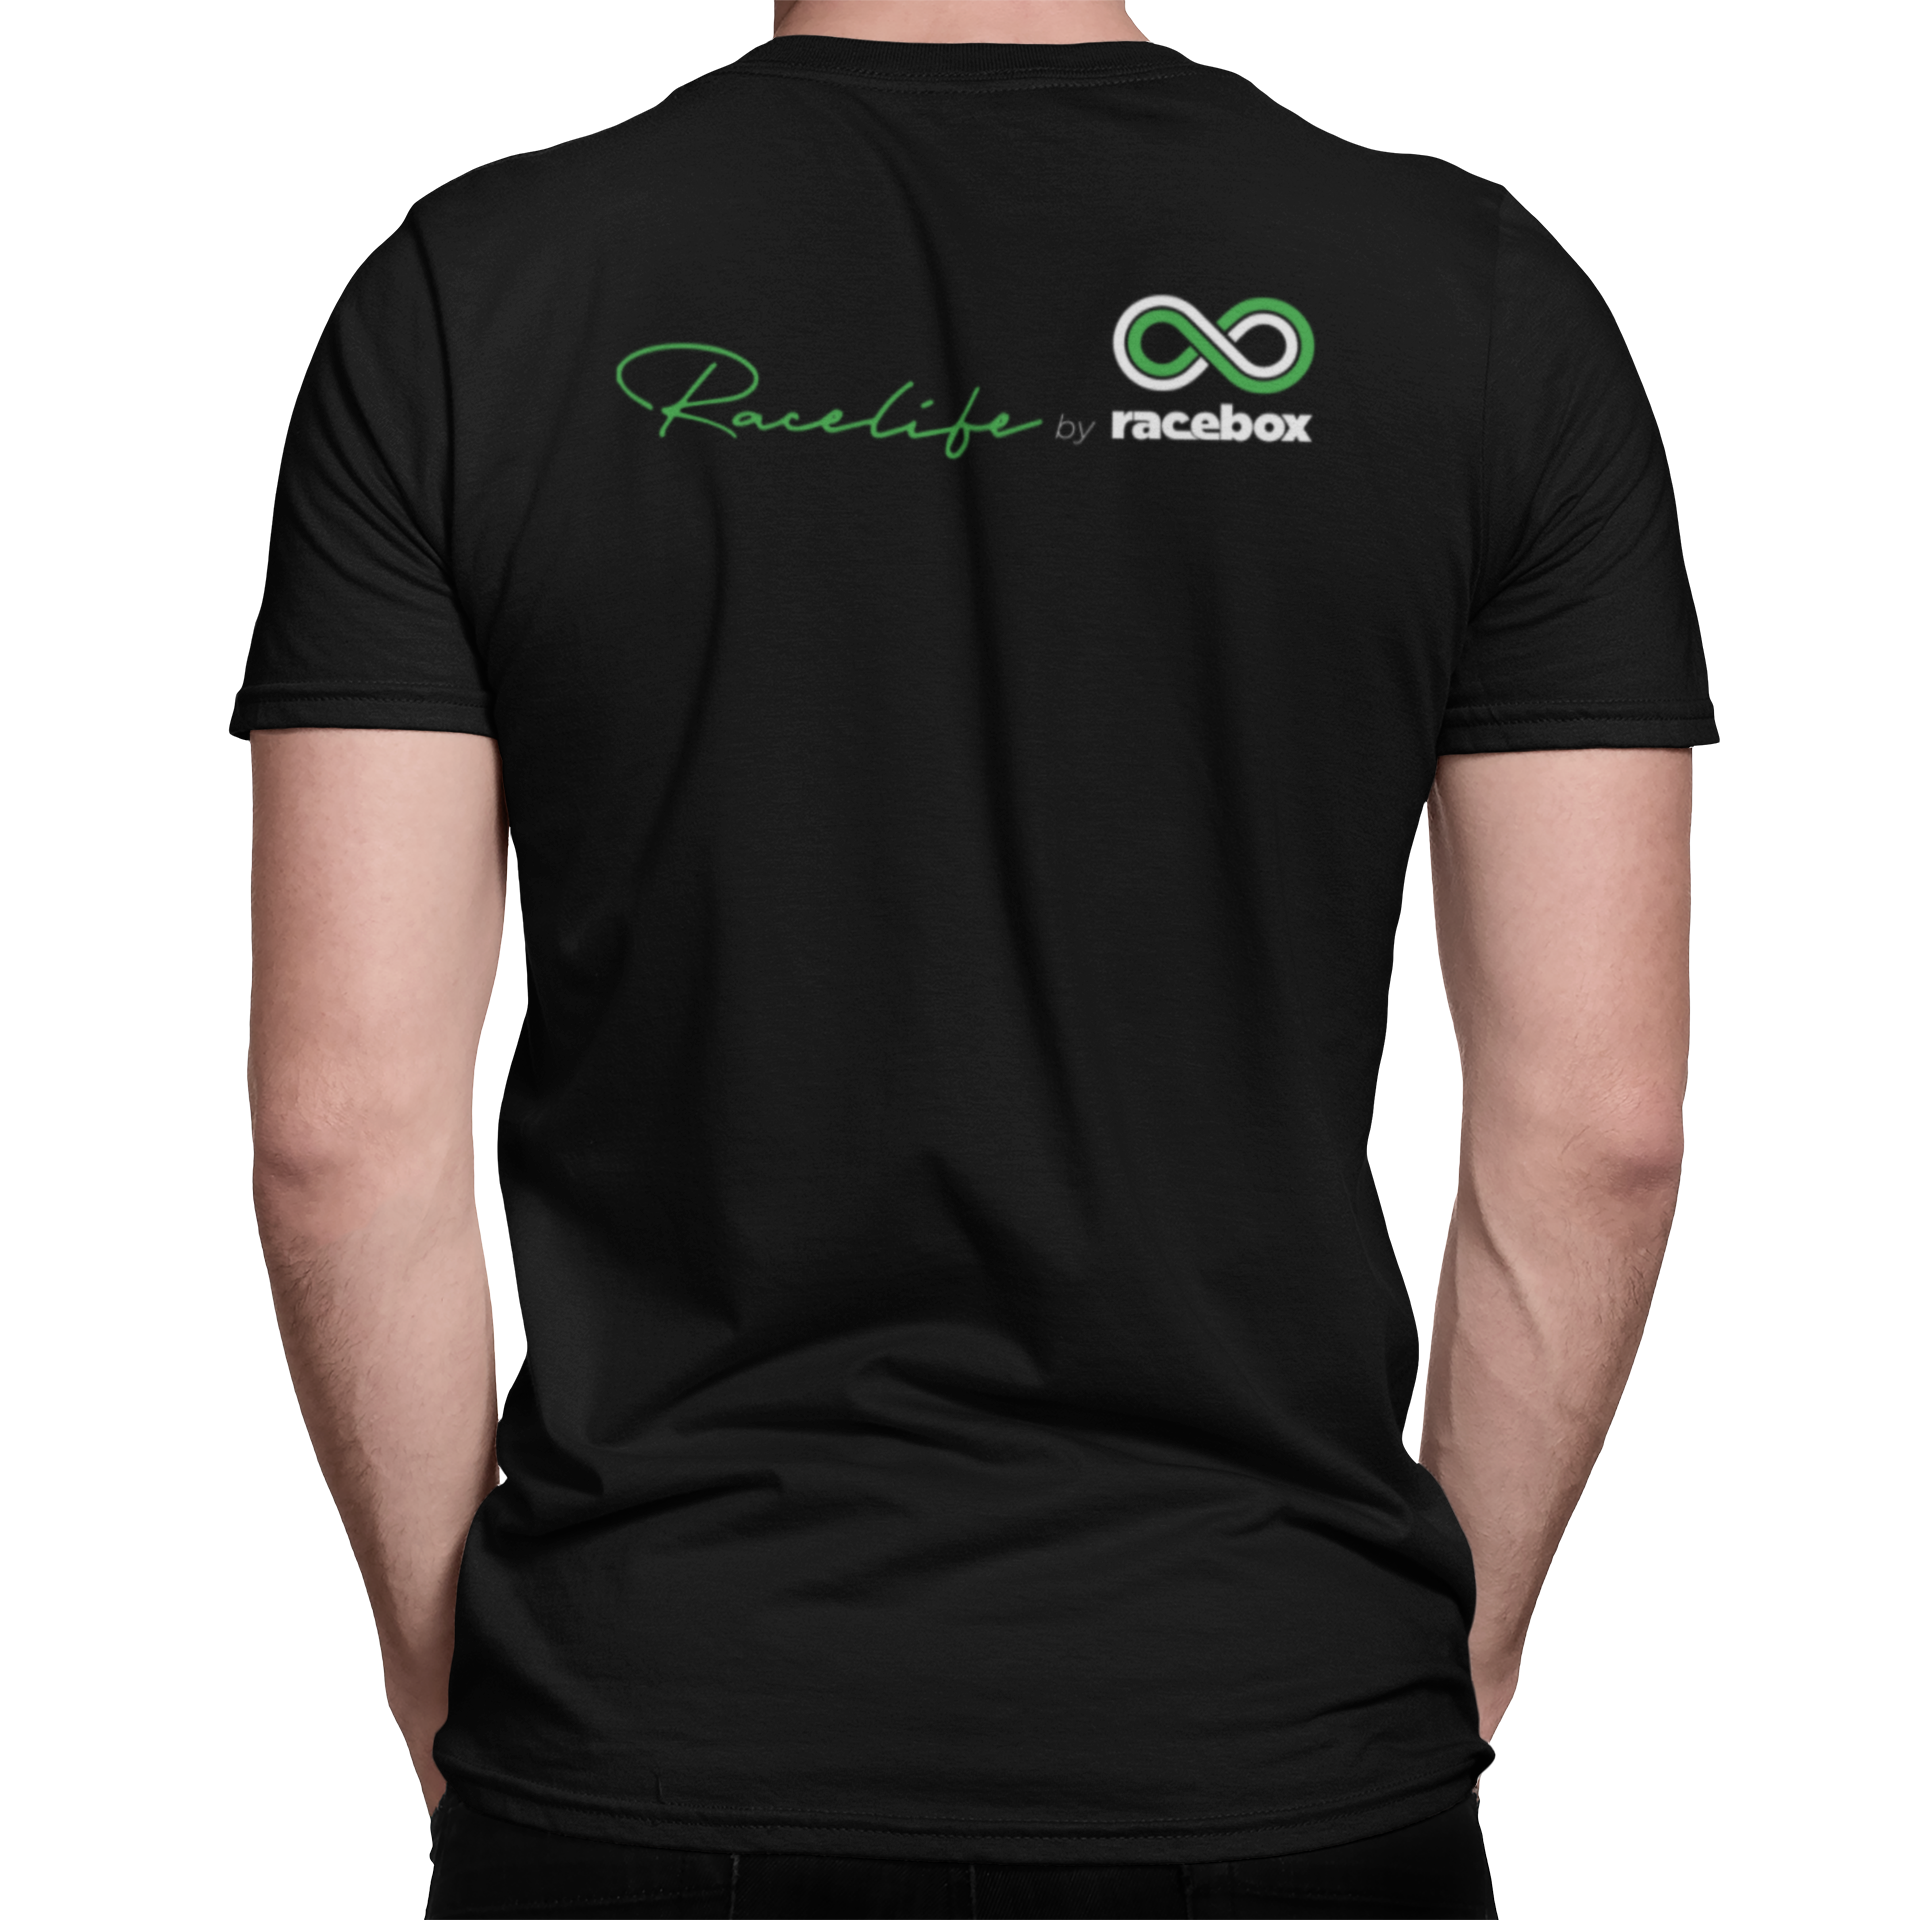 Racebox T-Shirt